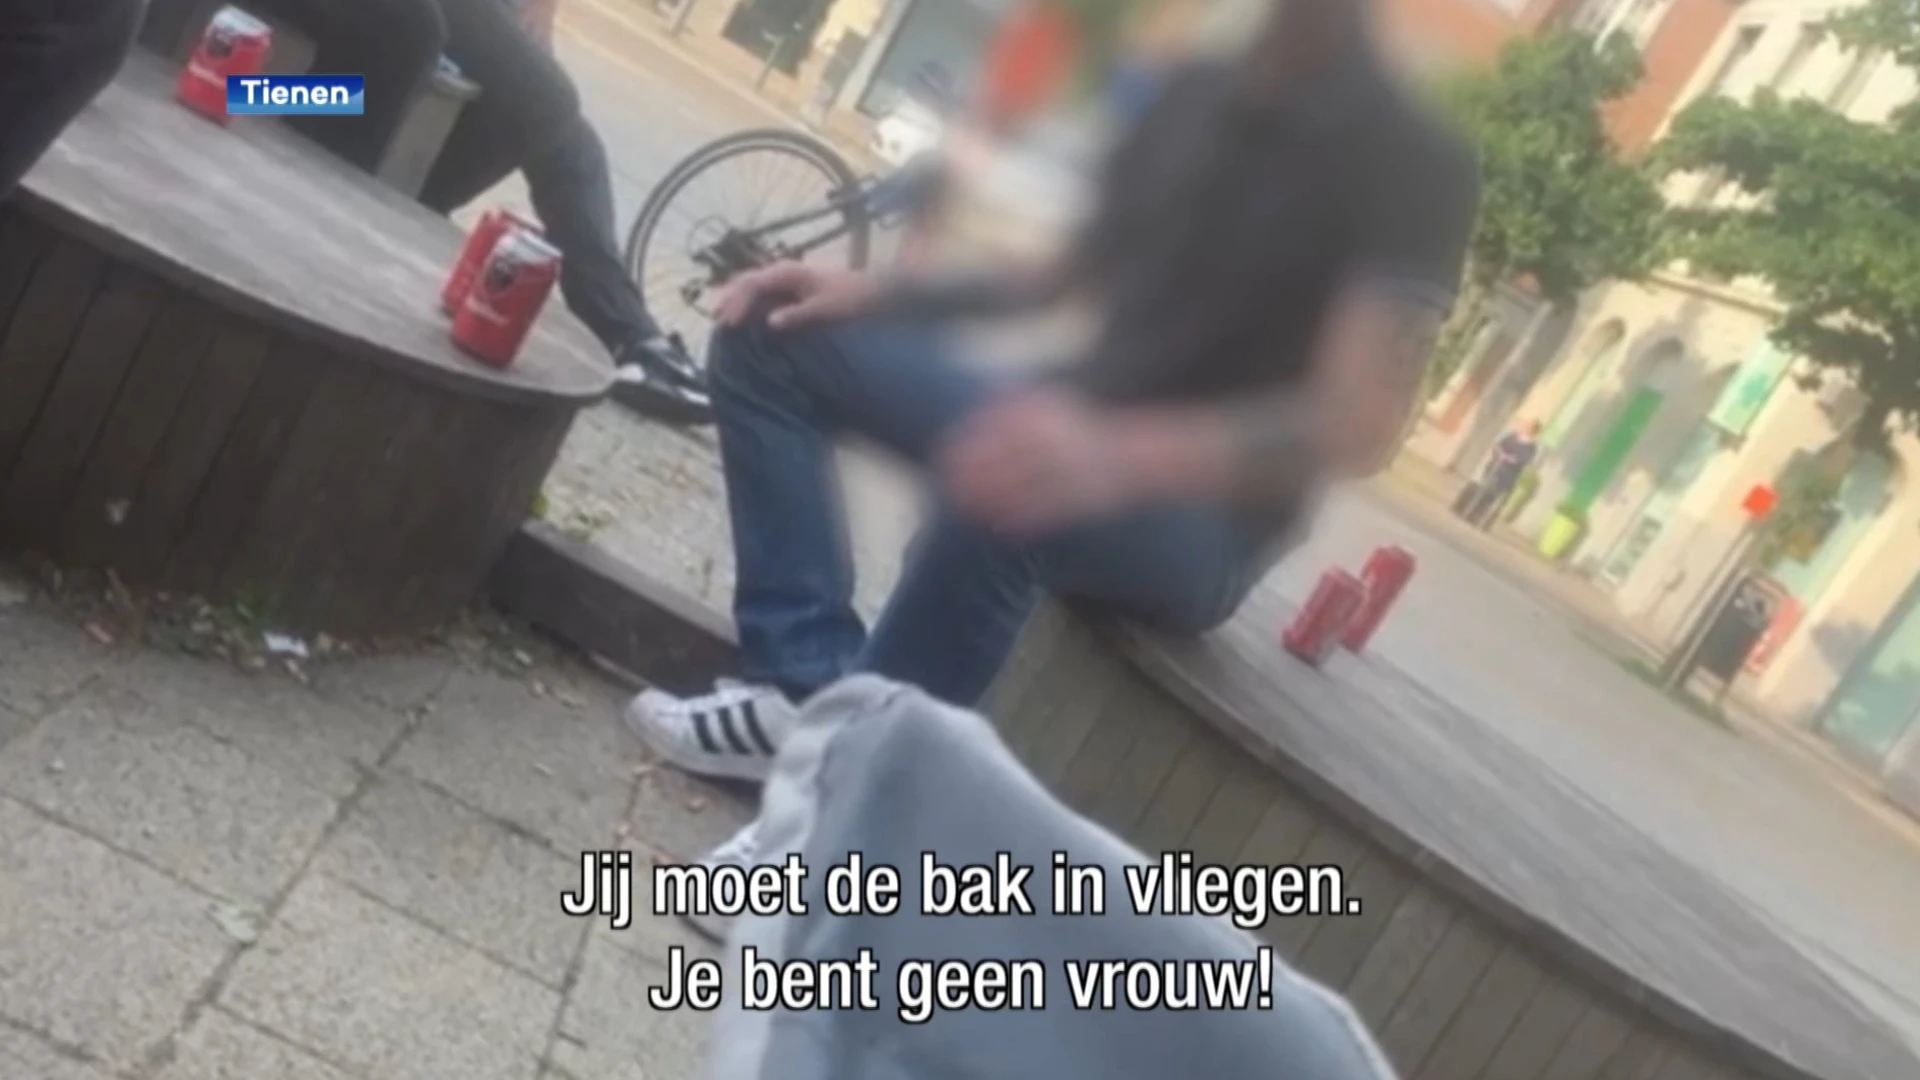 Zware transfobe discriminatie aan station van Tienen: "Gij moet de bak in vliegen, gij zijt een man!"